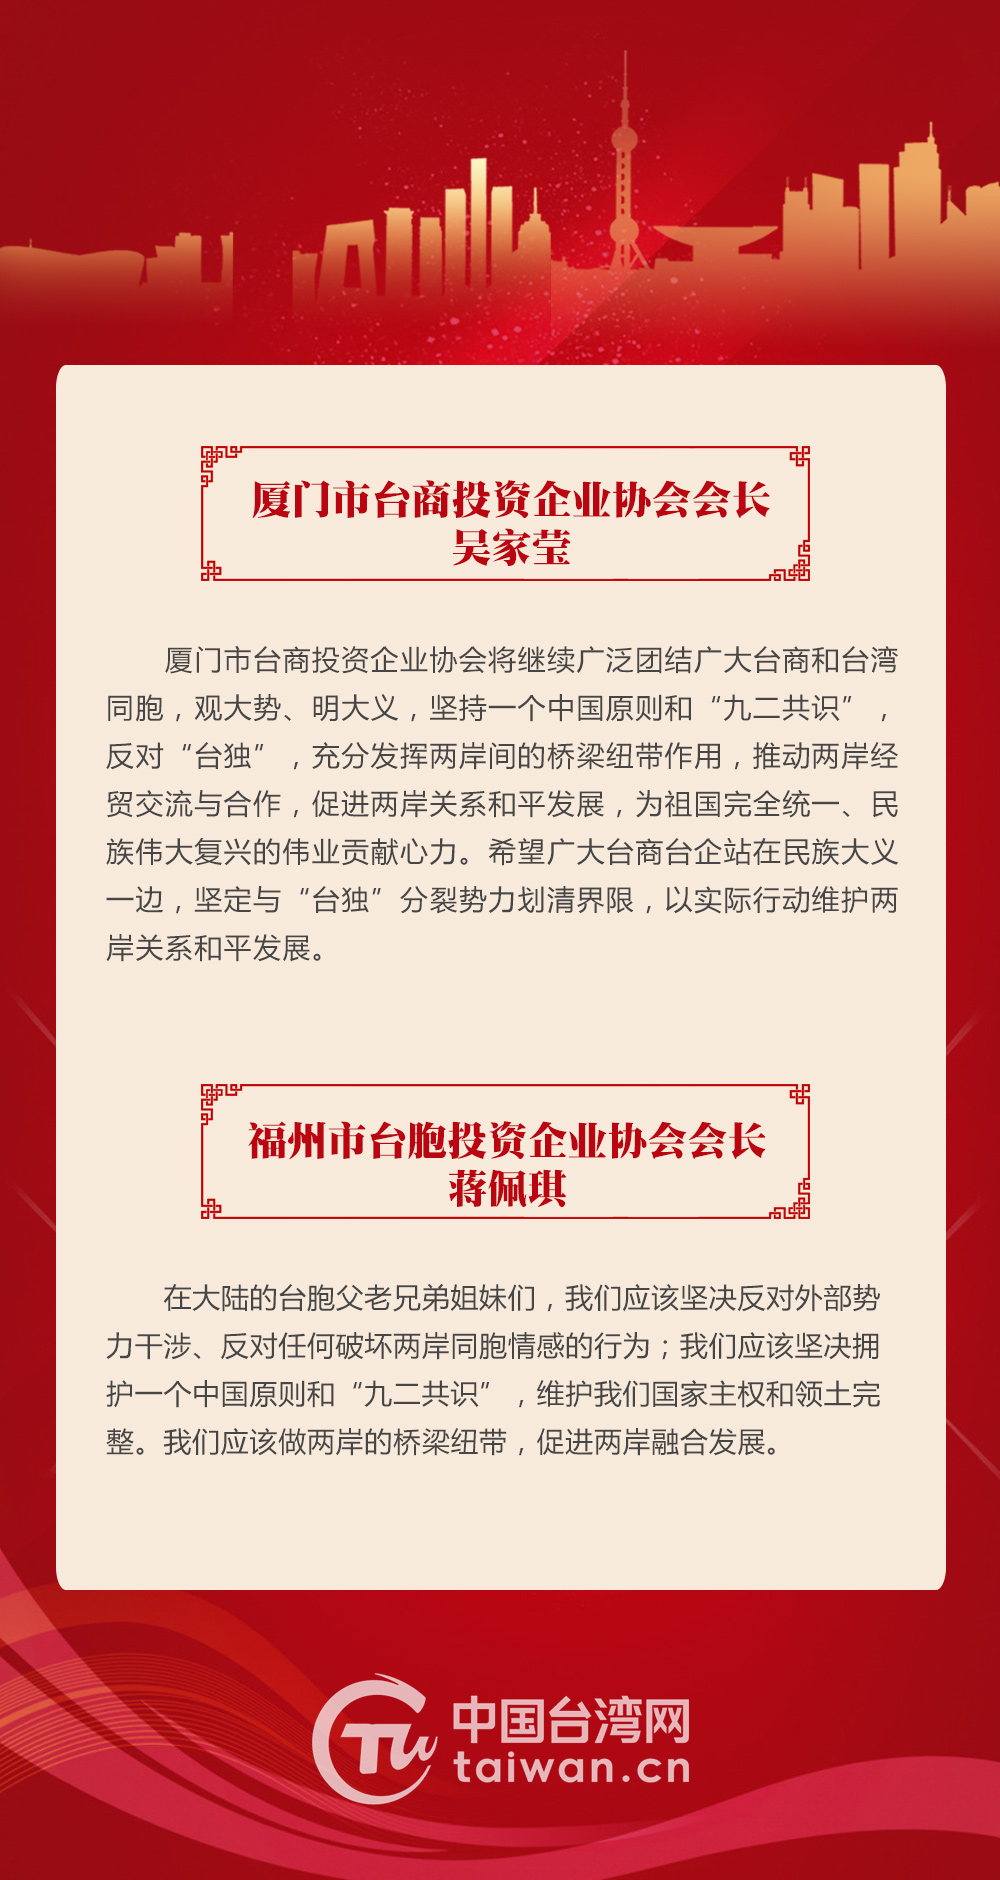 臺胞熱議《台灣問題與新時代中國統一事業》白皮書